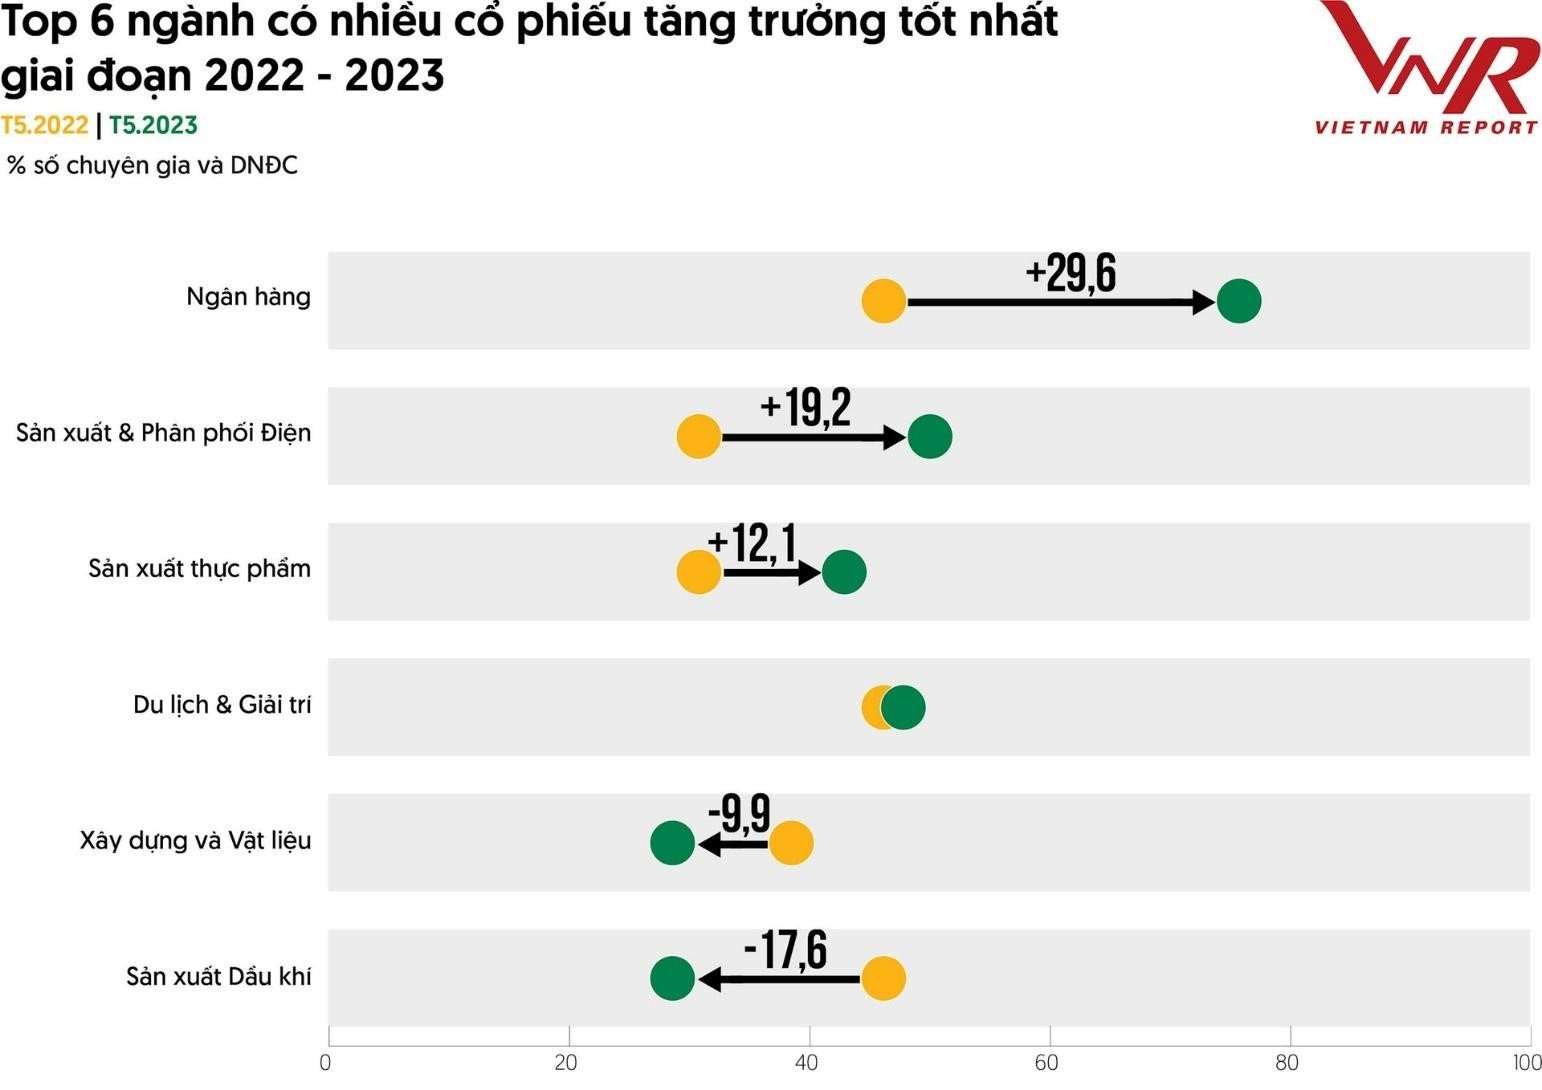 10 công ty đại chúng hiệu quả nhất 2023: Vietcombank soán ngôi vương từ Vinhomes, 3 ông lớn Hòa Phát, Masan và Thế giới Di động rời top 10 - Ảnh 3.